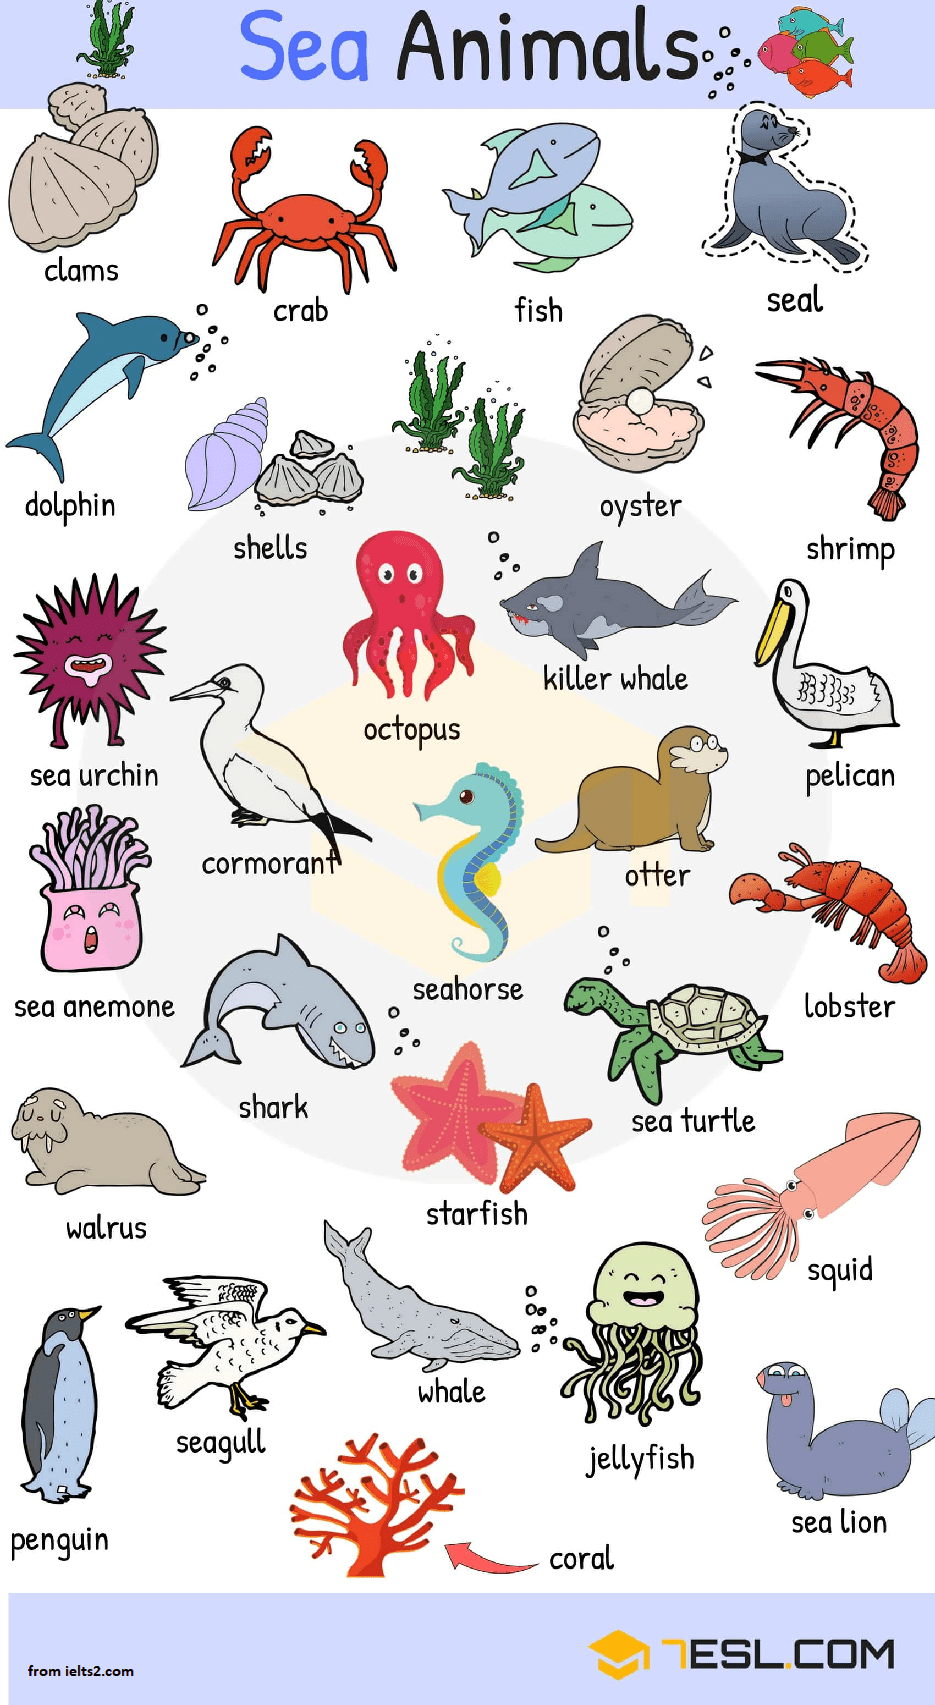 نام برخی حیوانات دریایی برای لیسنینگ و ریدینگ آیلتس